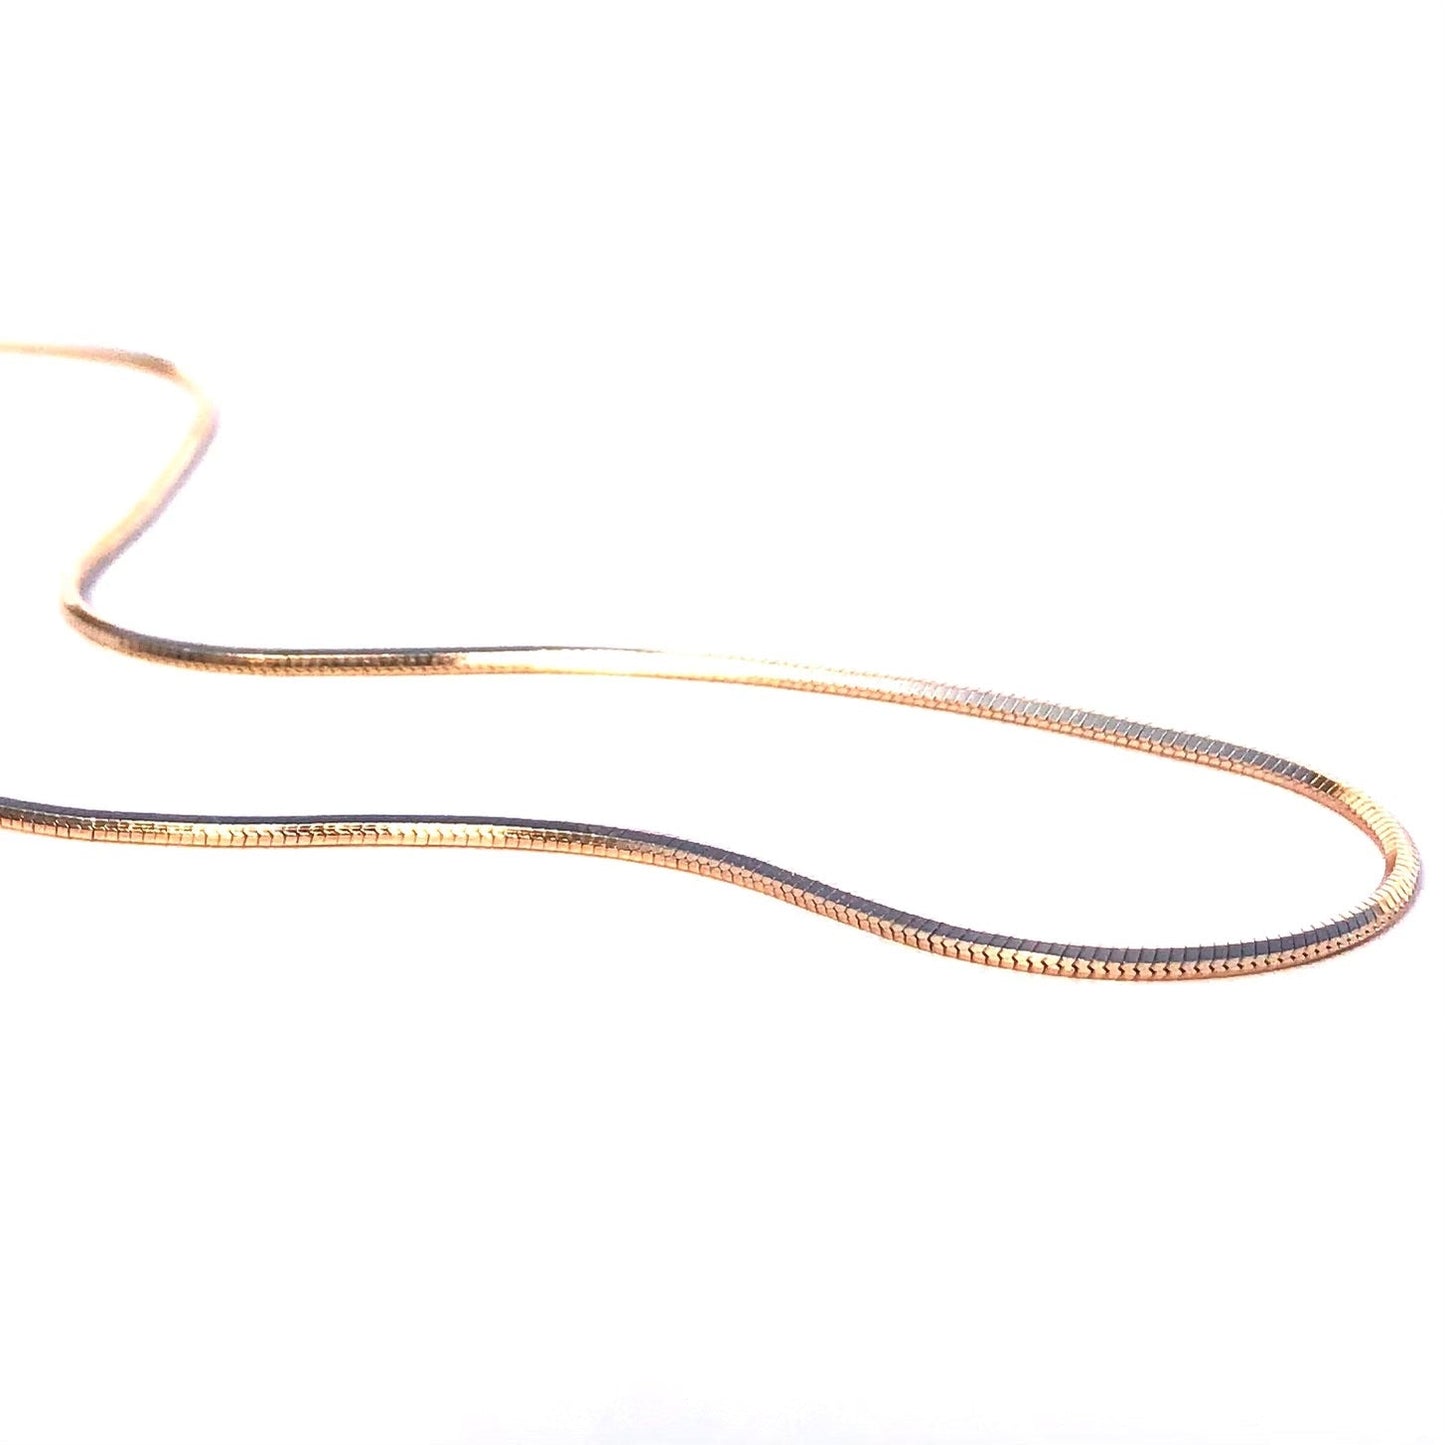 Snake Chain 14k Gold Fill 18" 2mm